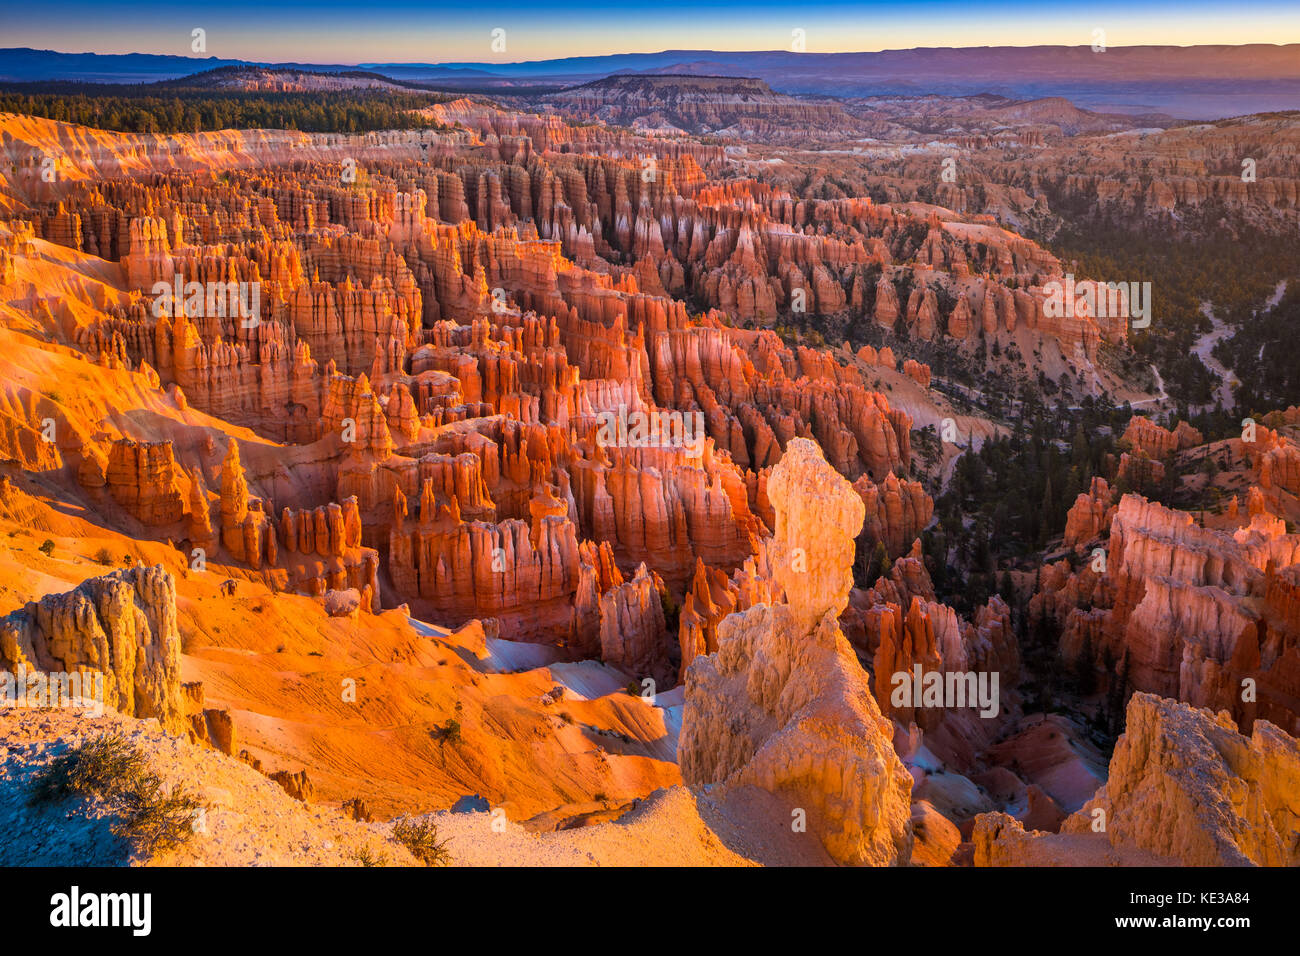 Bryce-Canyon-Nationalpark, eine weitläufige Reserve im südlichen Utah ist bekannt für Purpur gefärbten Hoodoos, die Turmspitze geformten Felsformationen sind. Stockfoto